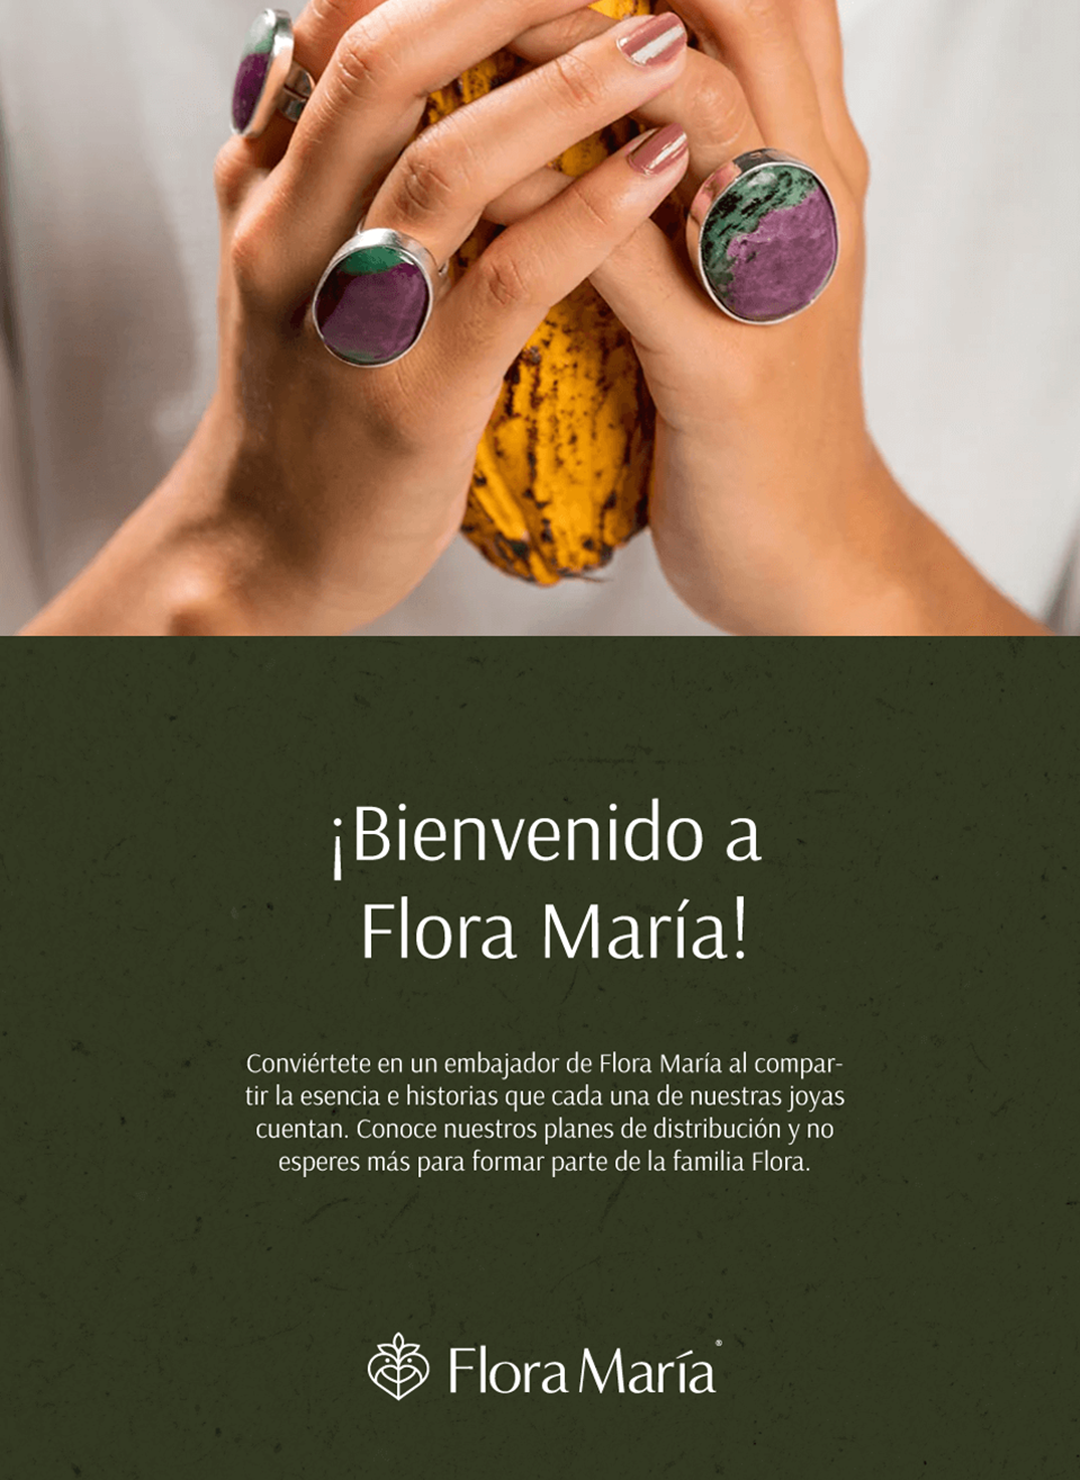 Flora María